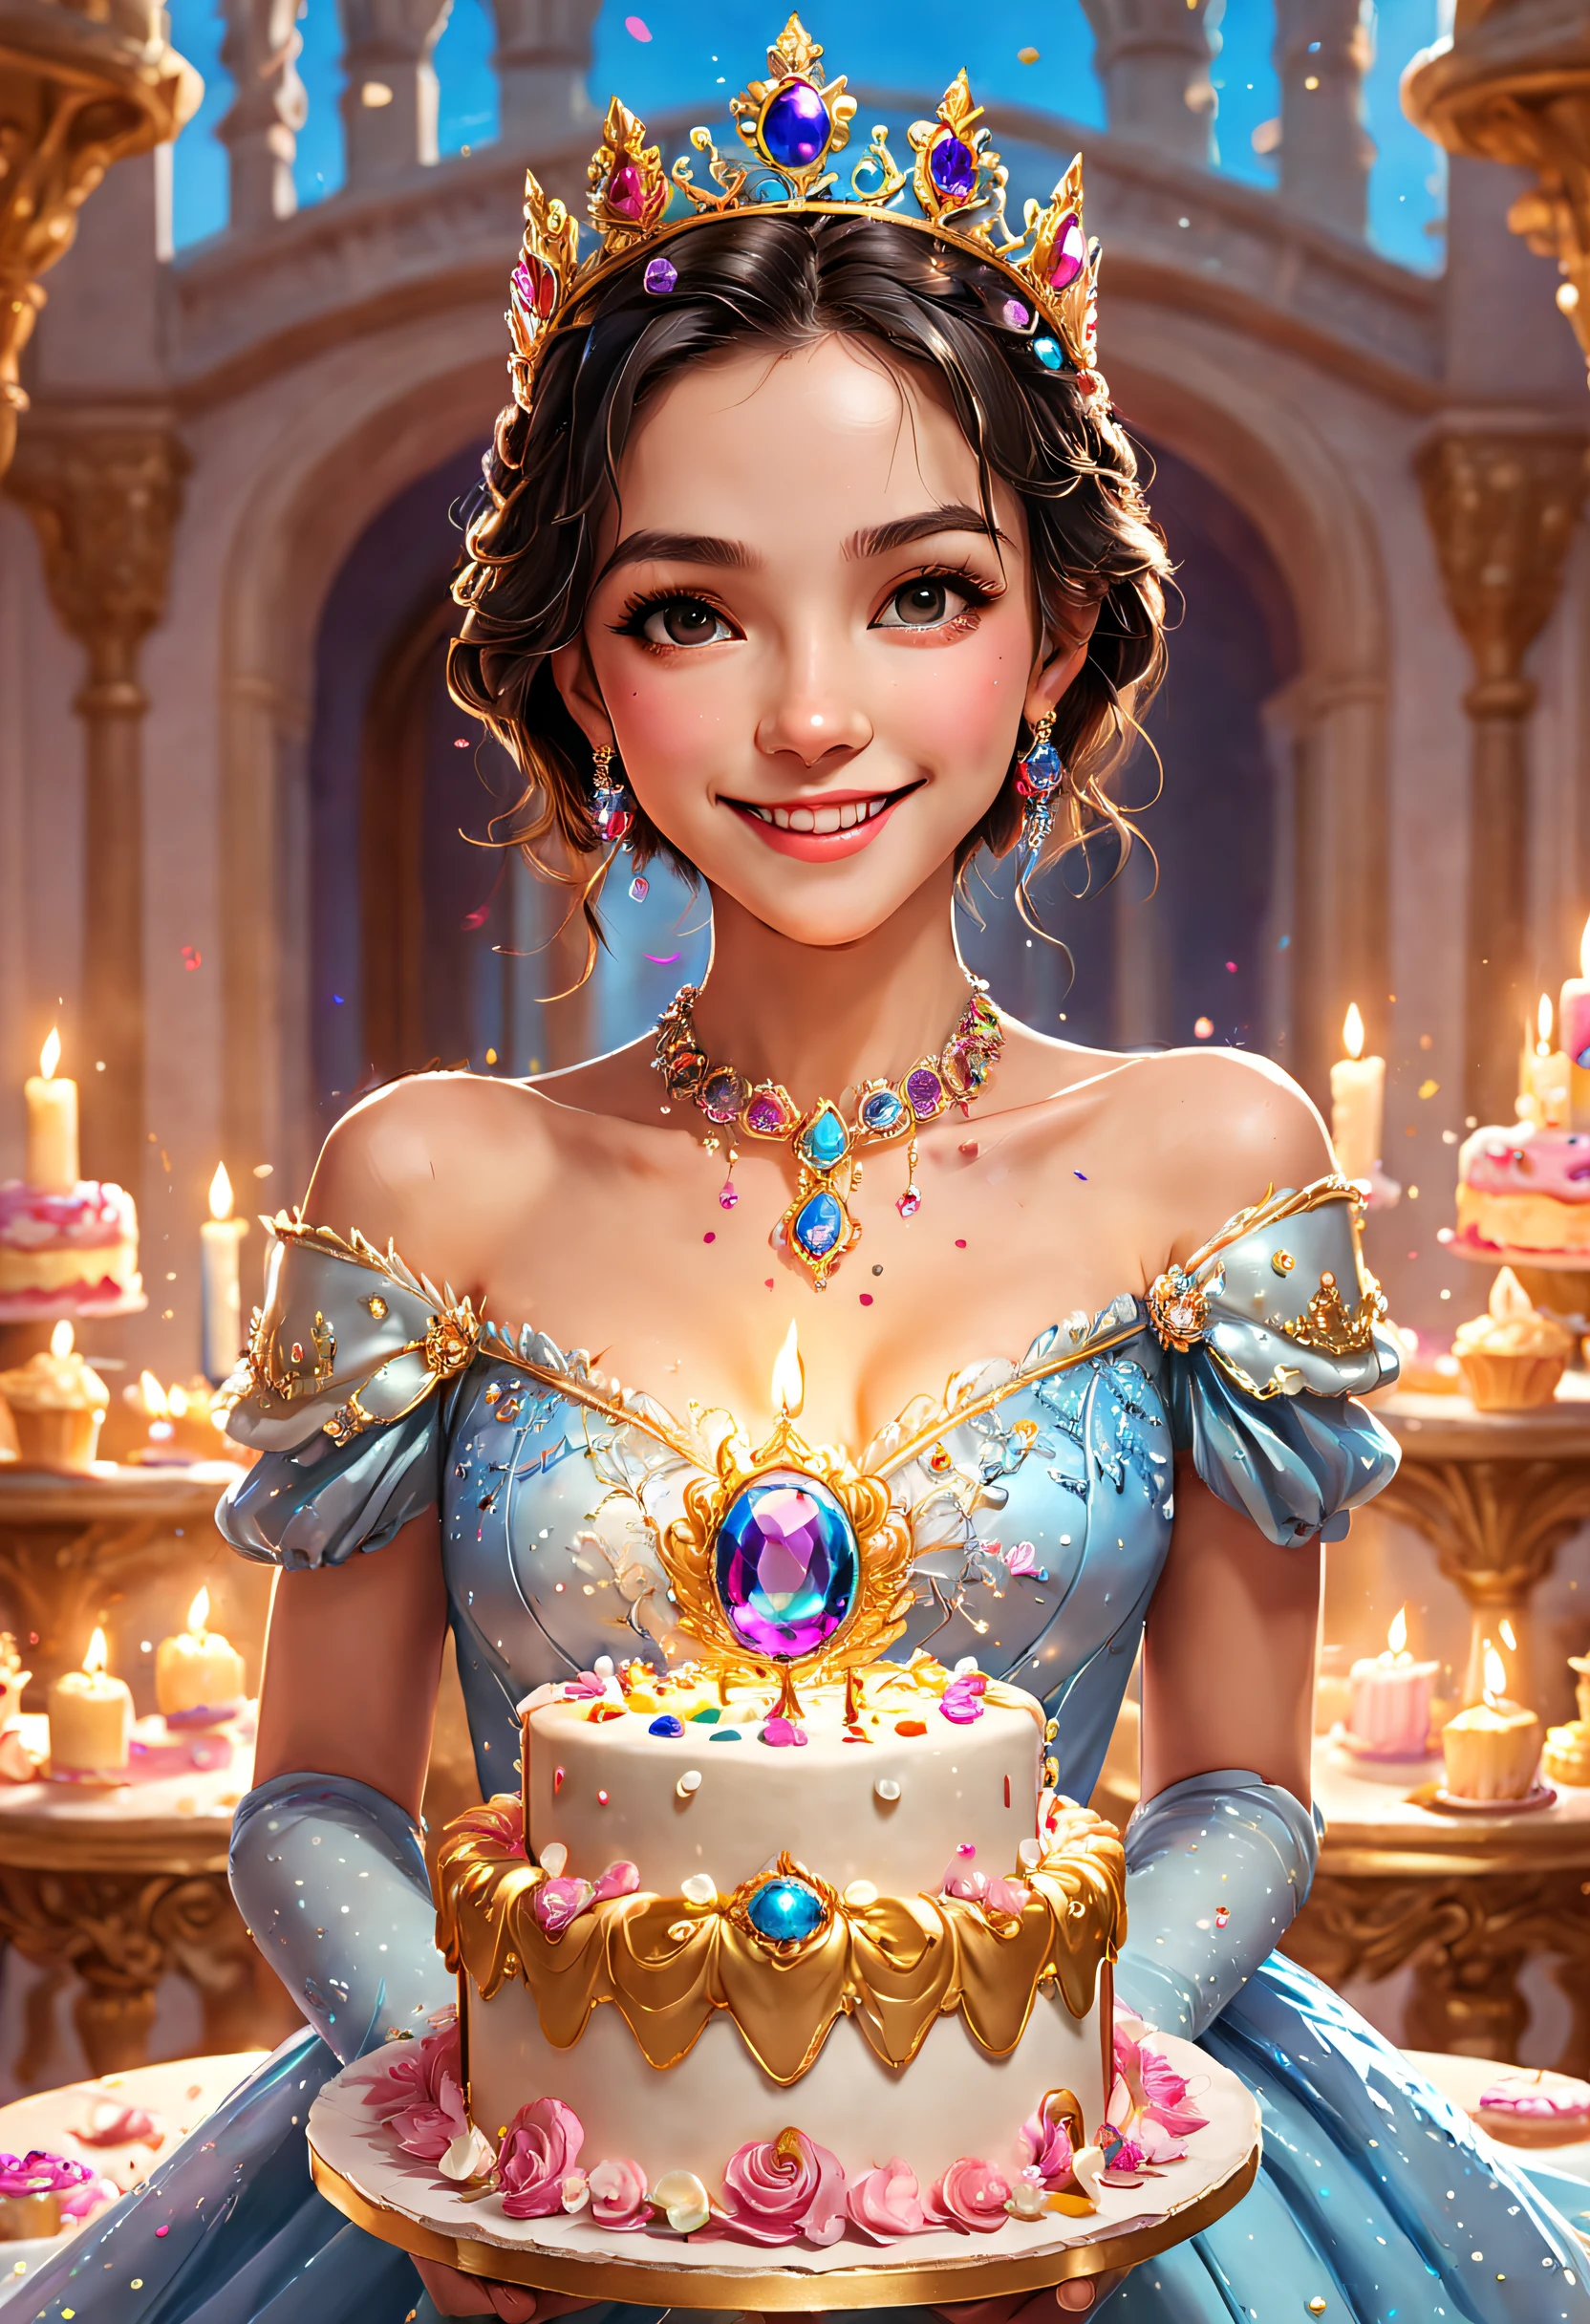 精美的 8K 超高清专业照片, 清晰聚焦, 在一个令人惊叹的幻想世界中, 戴着王冠的美丽公主，生日蛋糕上镶满了宝石, 开心的微笑, 在一座豪华的宫殿里，一个巨大的蛋糕，上面有蜡烛和五彩纸屑, 巨大的生日蛋糕, 上面镶着闪闪发光的宝石